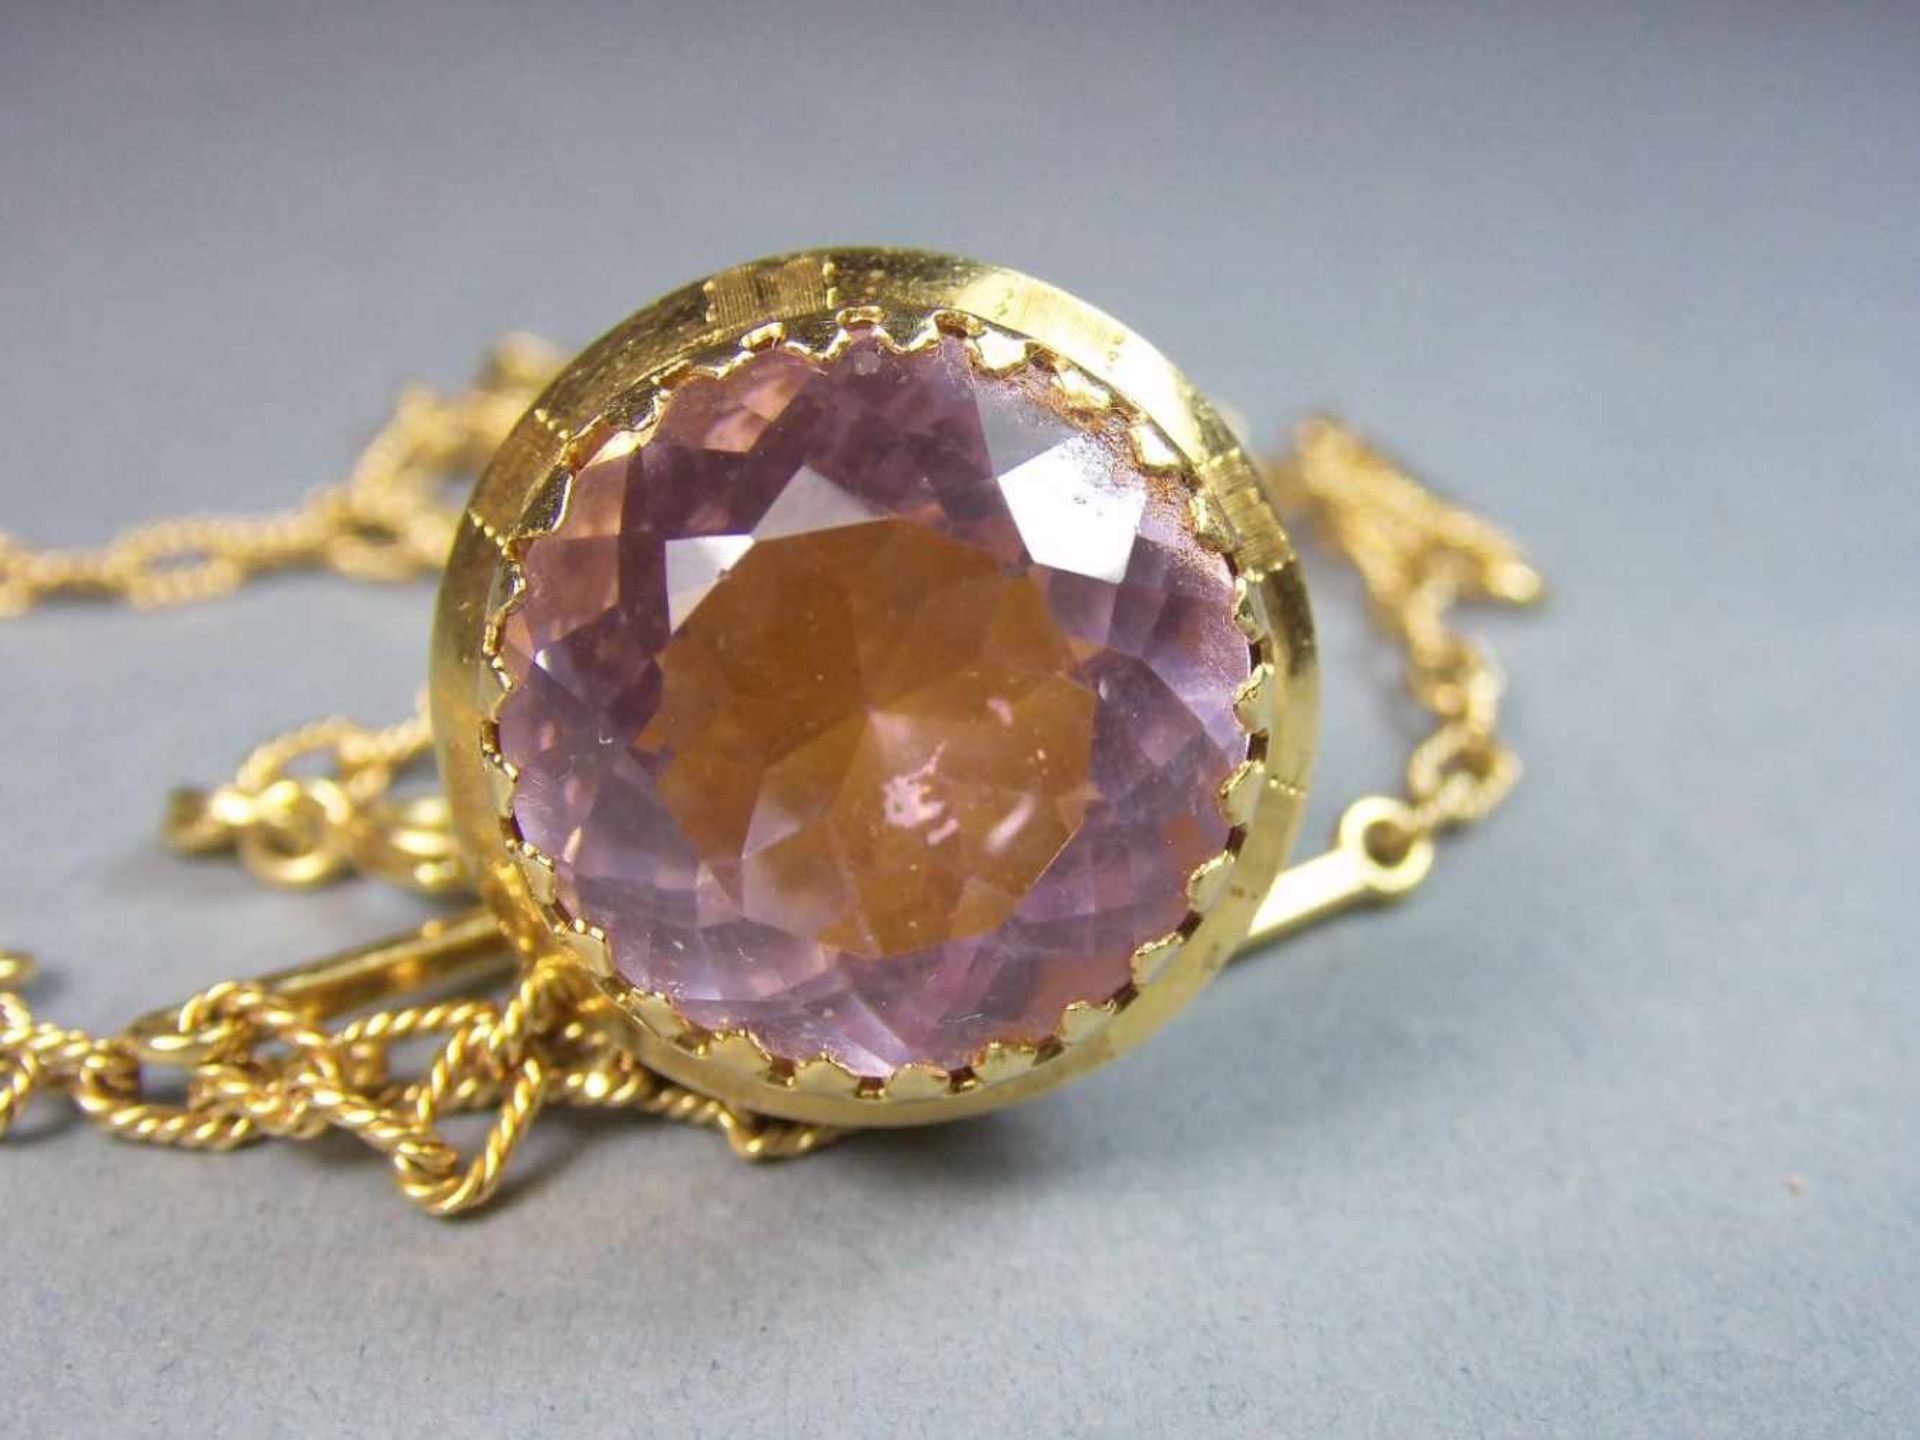 KETTE MIT ANHÄNGER in Kegelform / necklace and pendant, darin roséfarbener Edelstein, 750er Gelbgold - Image 3 of 4